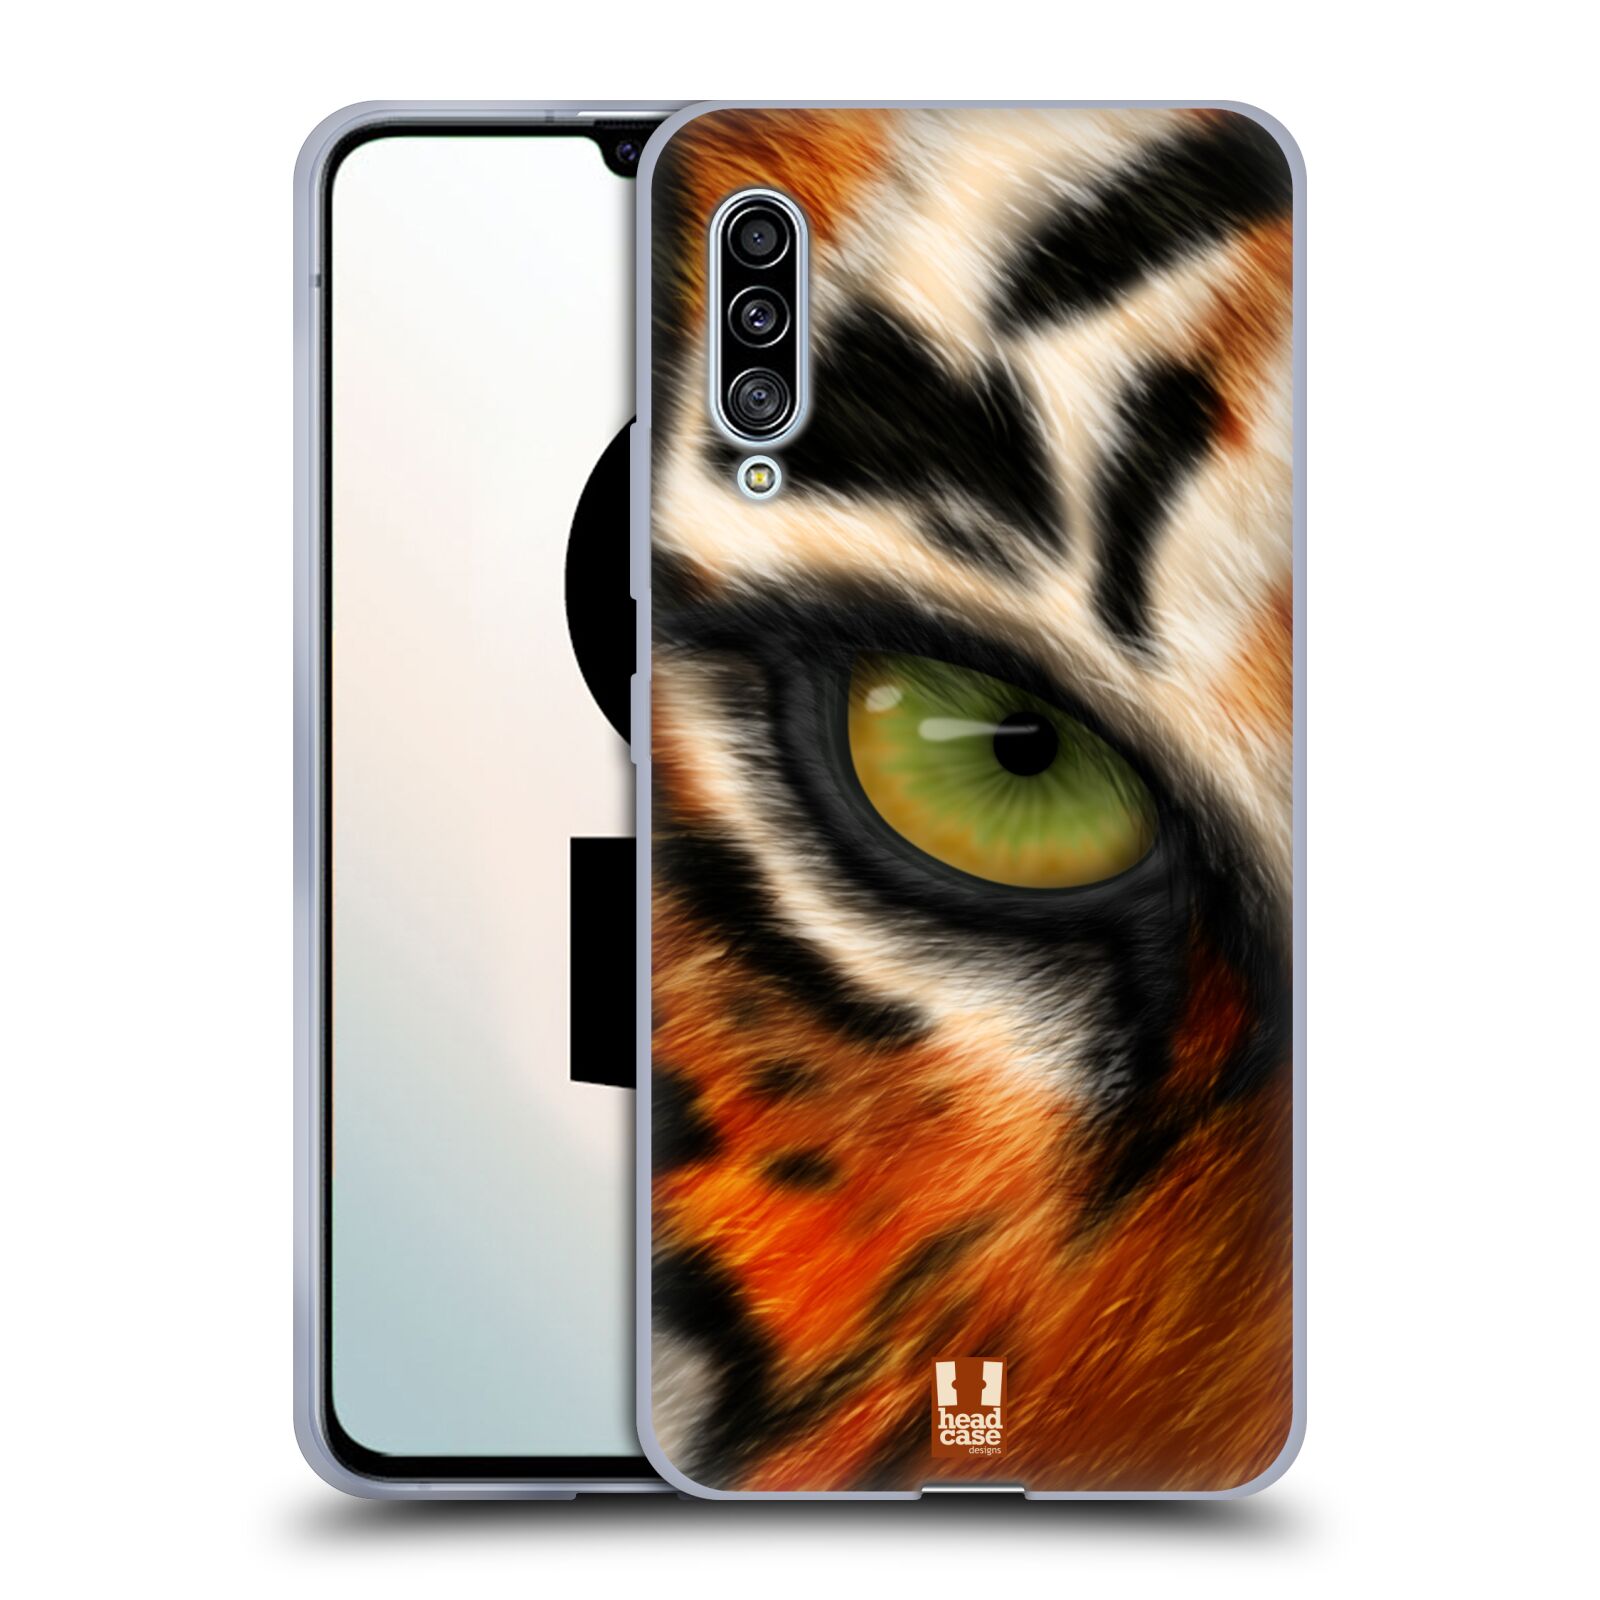 Plastový obal HEAD CASE na mobil Samsung Galaxy A90 5G vzor pohled zvířete oko tygr